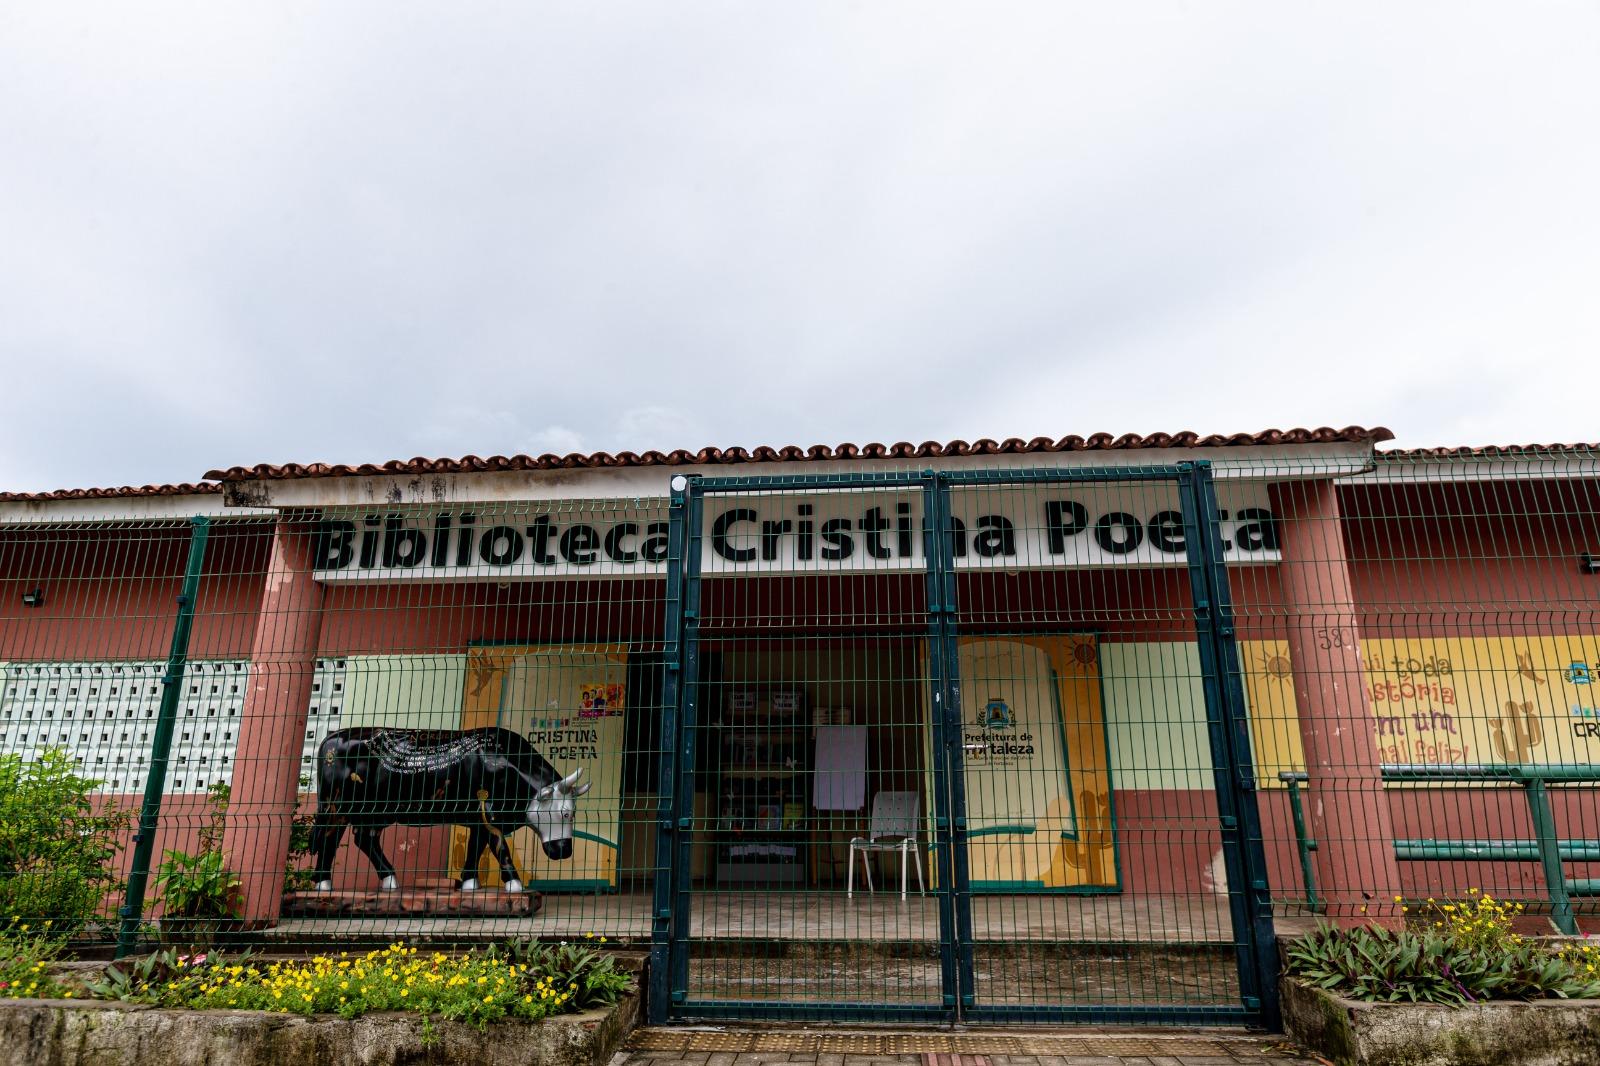 Biblioteca Cristina Poeta, no bairro Autran Nunes, homenageia memória da cordelista e ativista cearense